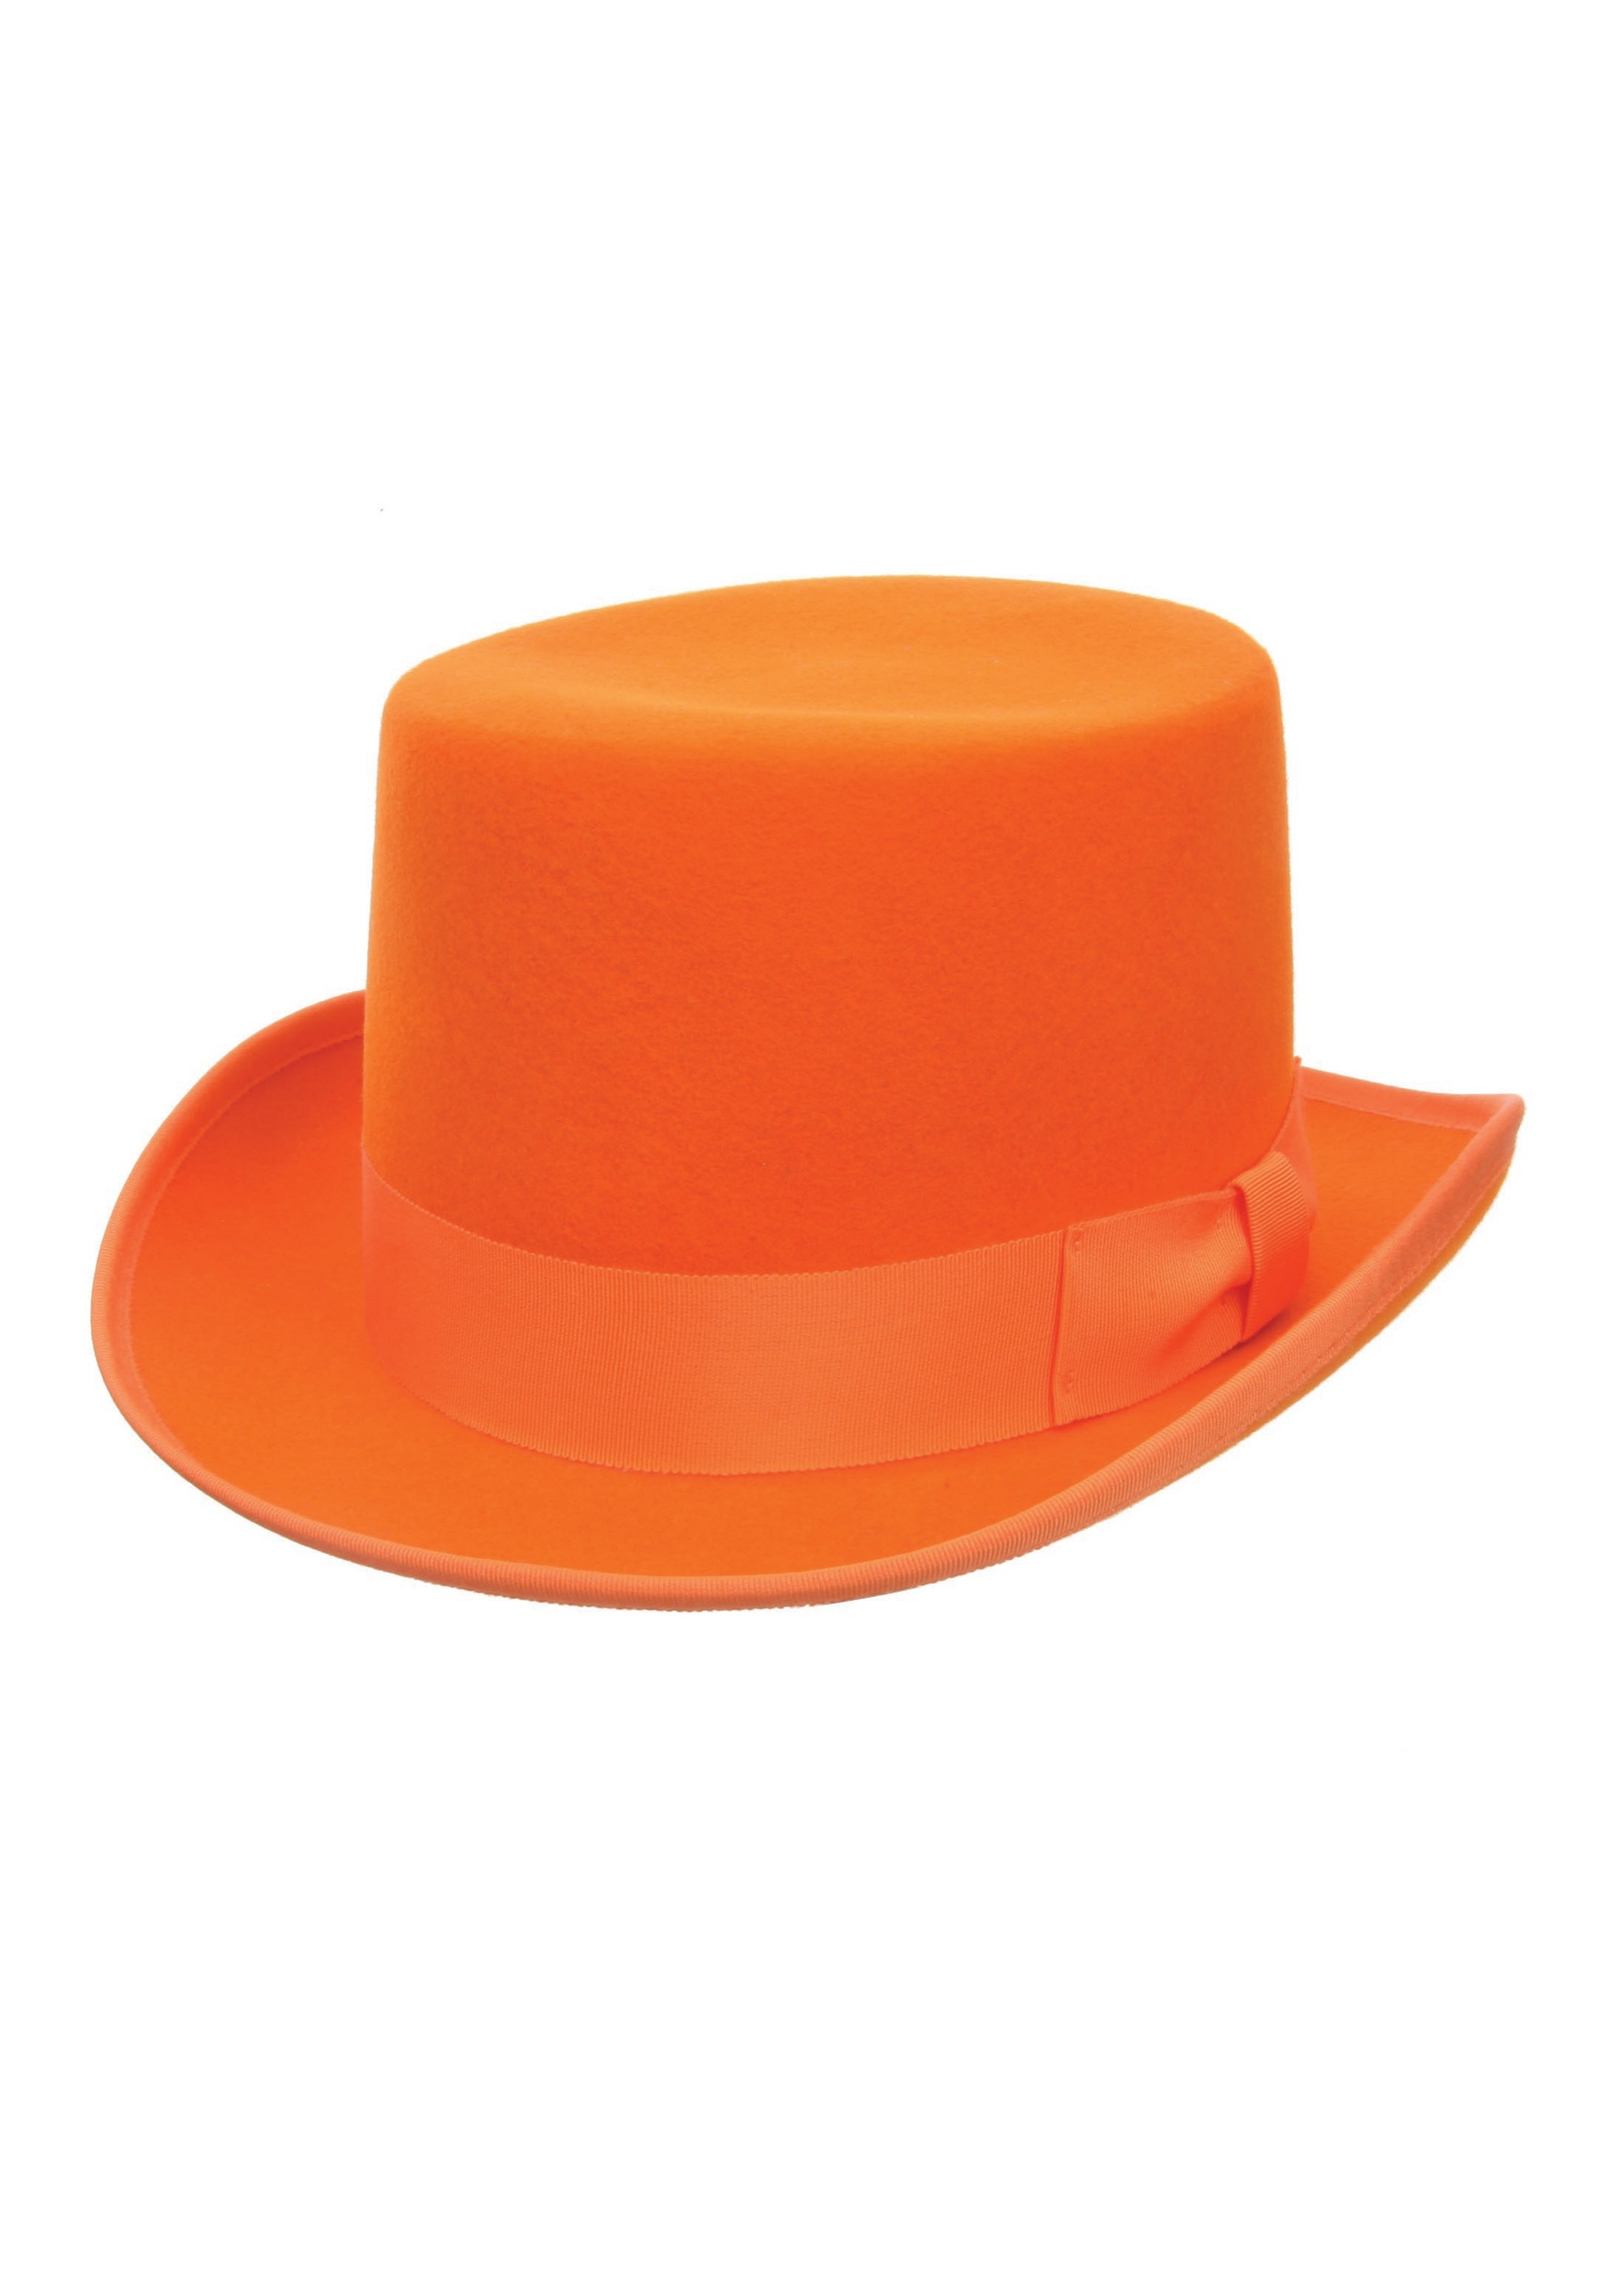 Orange Wool Top Hat